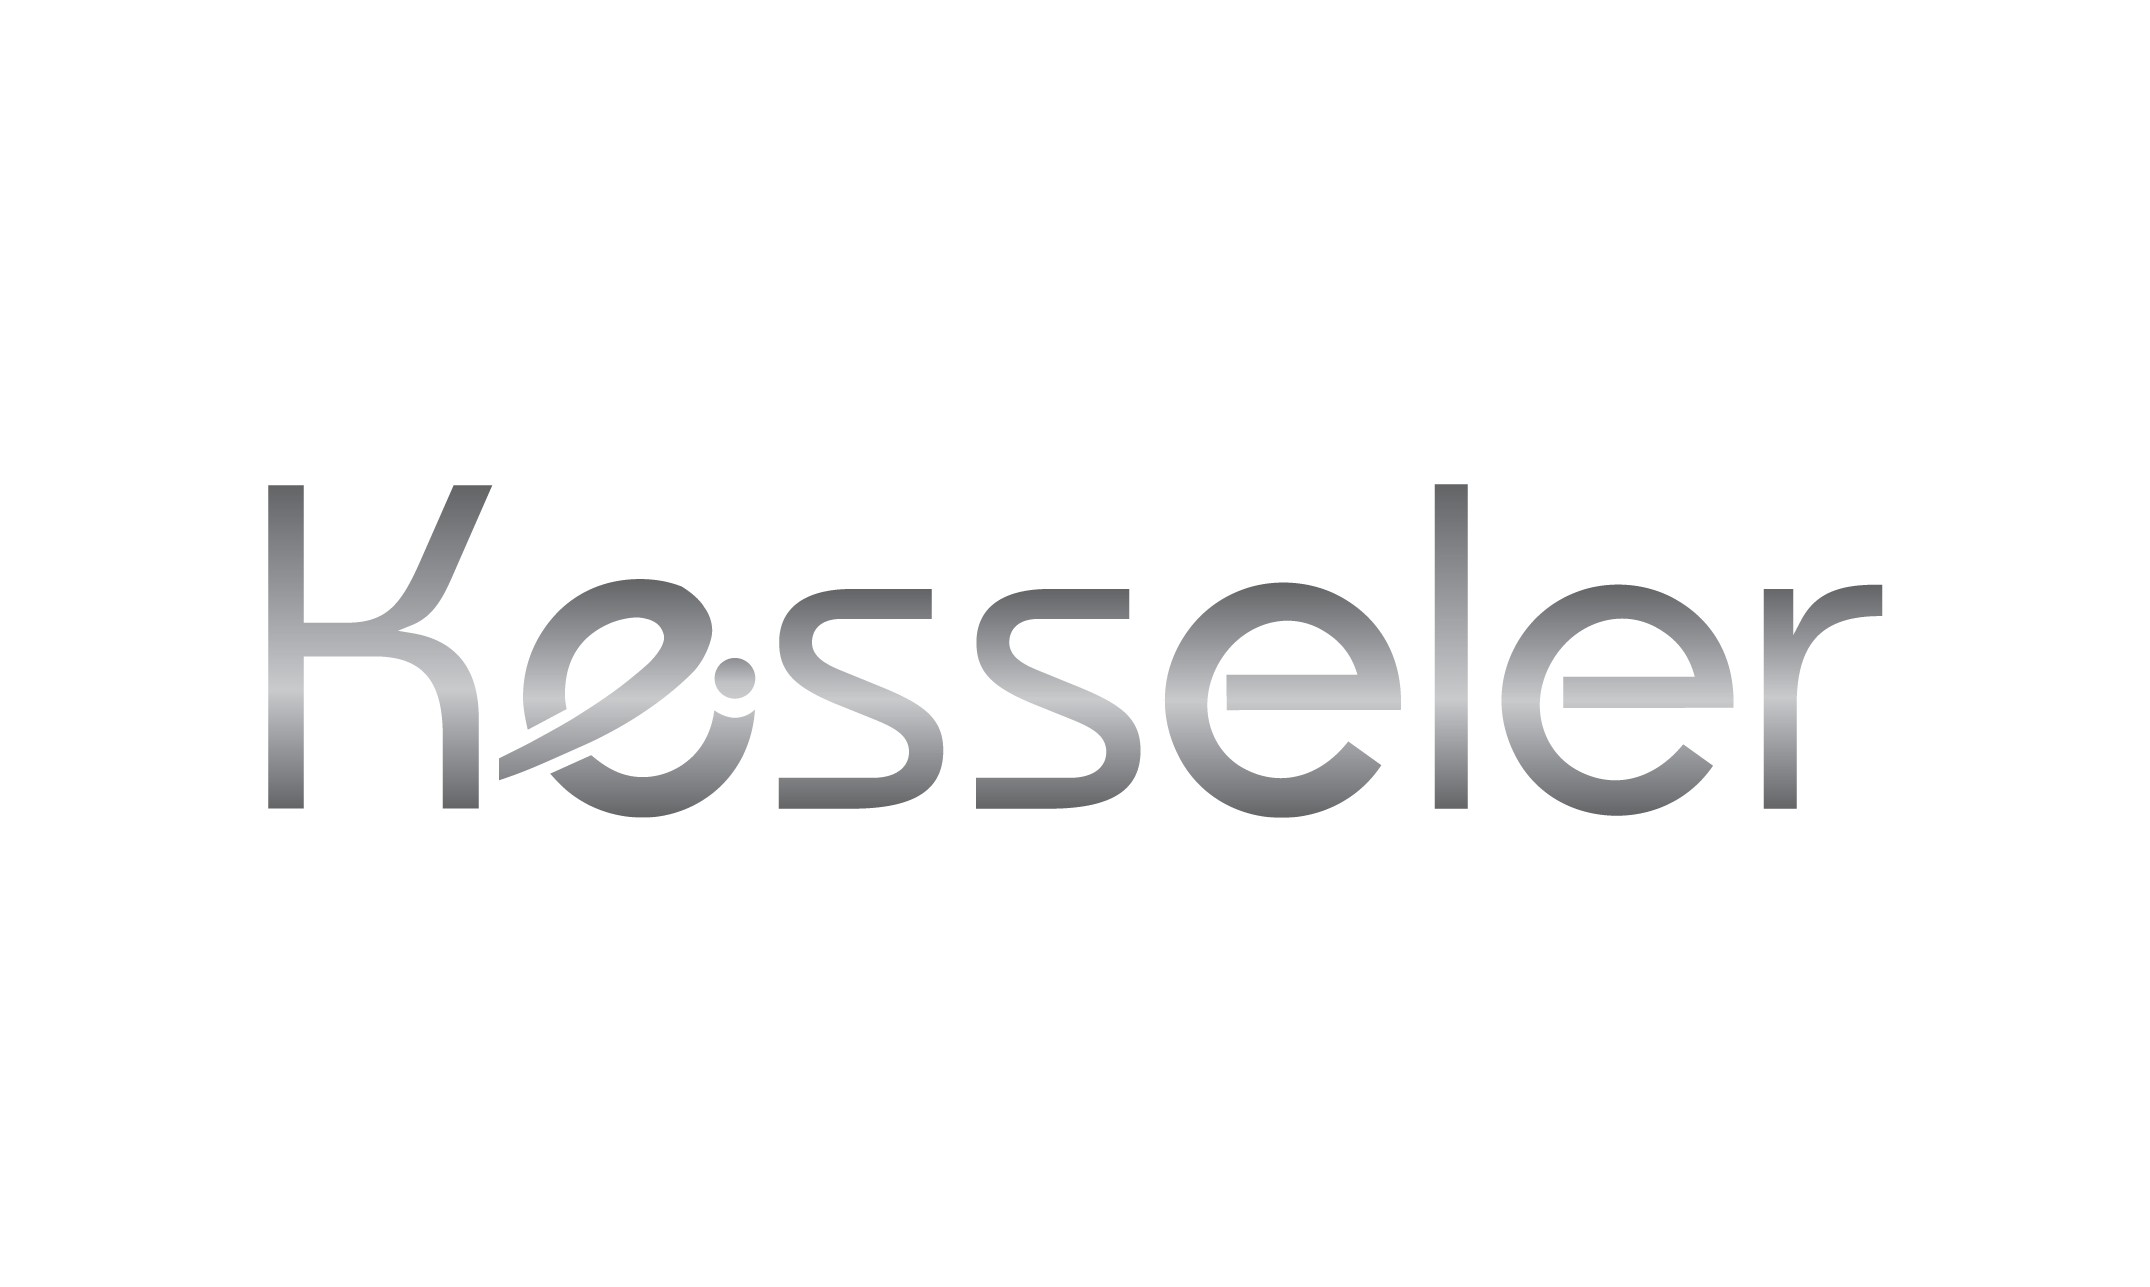 Kesseler